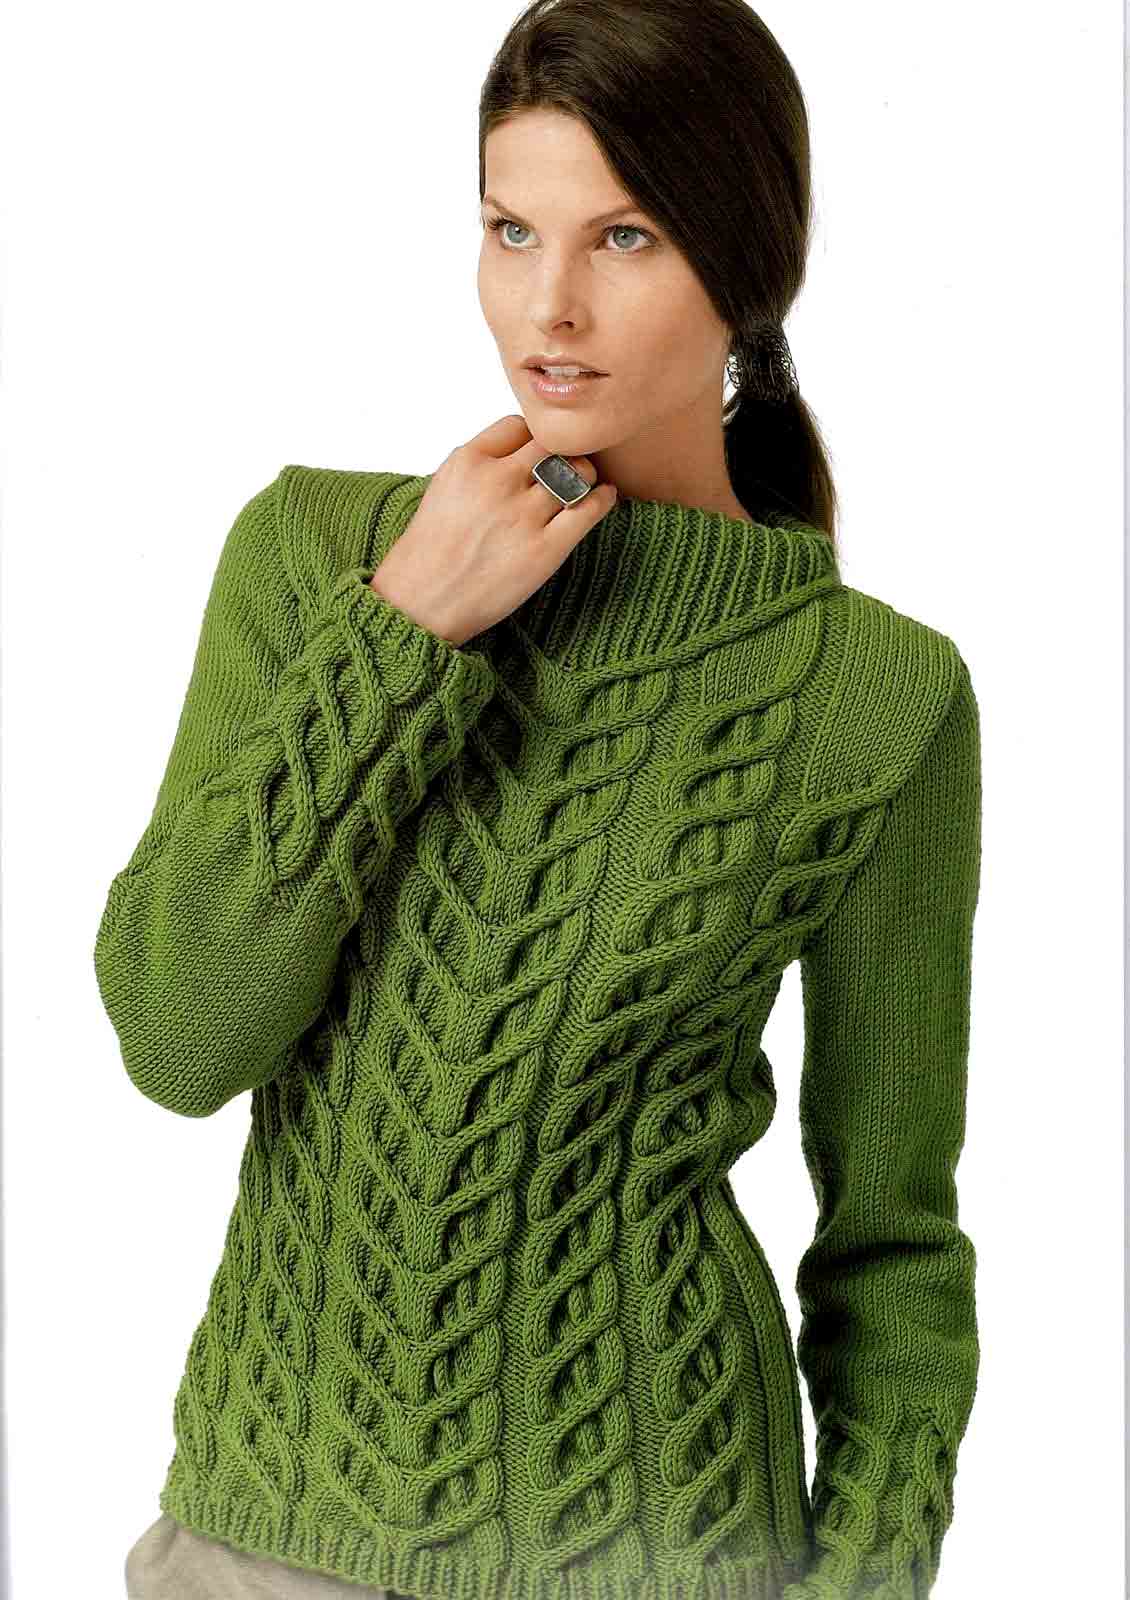 Вязание свитера для женщин